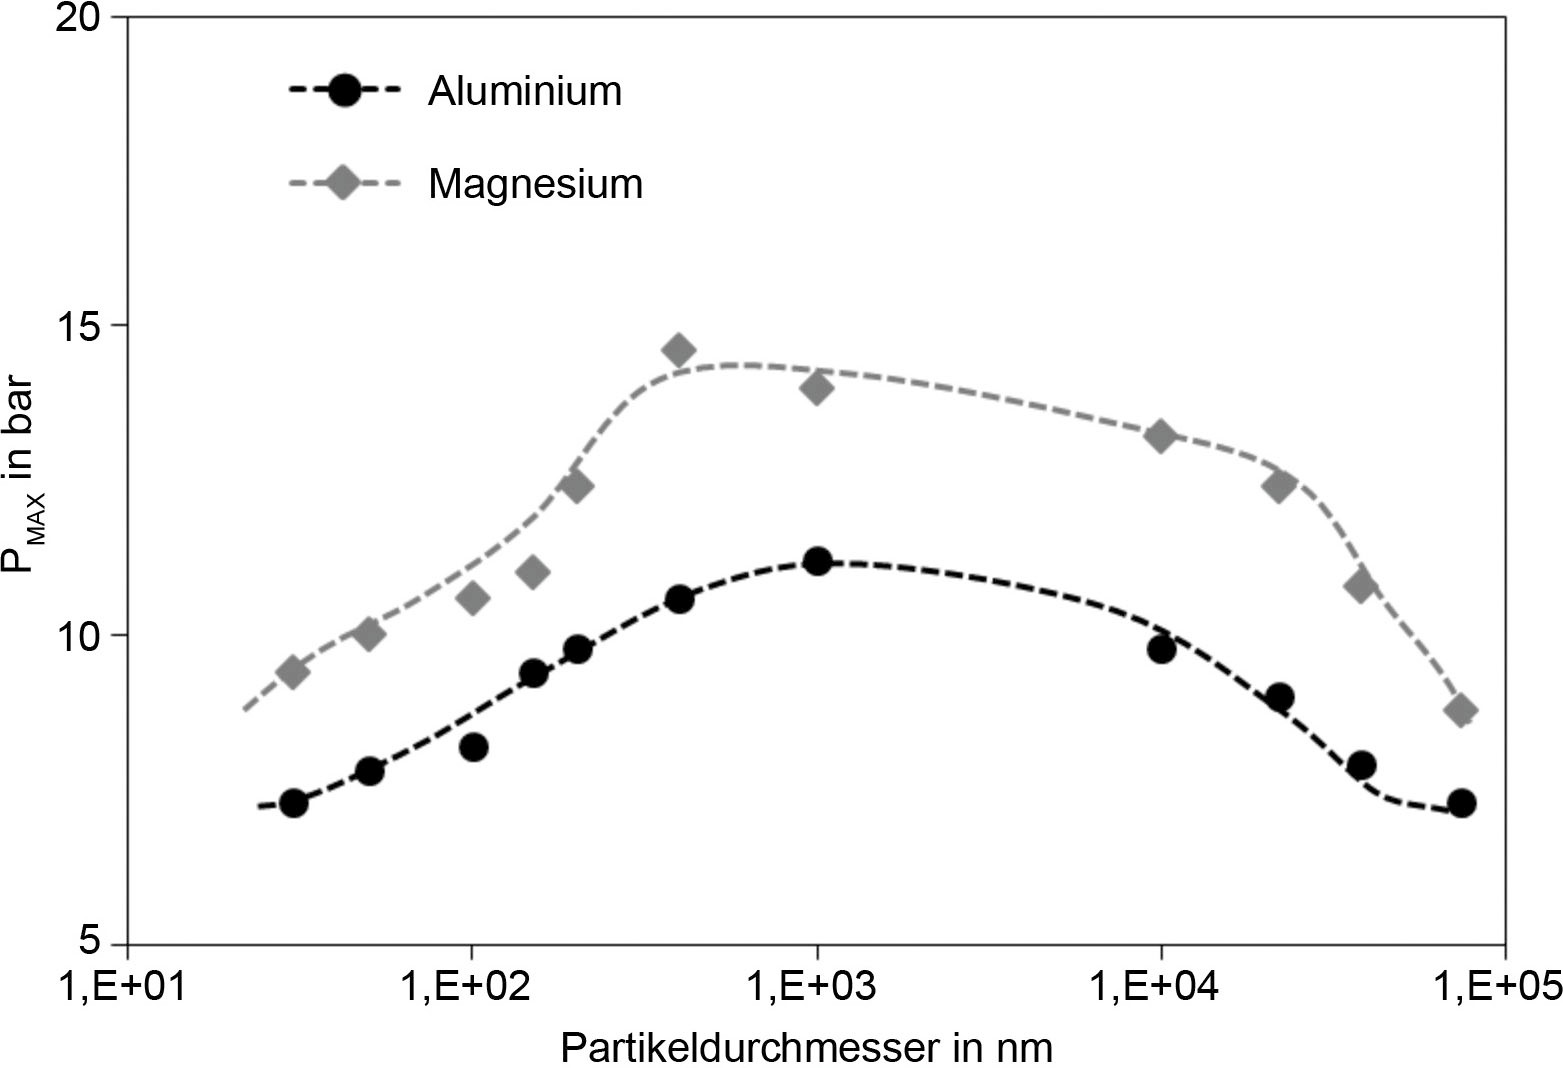 Bild 7. PMAX-Werte für Al und Mg in Abhängigkeit des Partikeldurchmessers [23; 24] (Auszug). Quelle: TU Wien